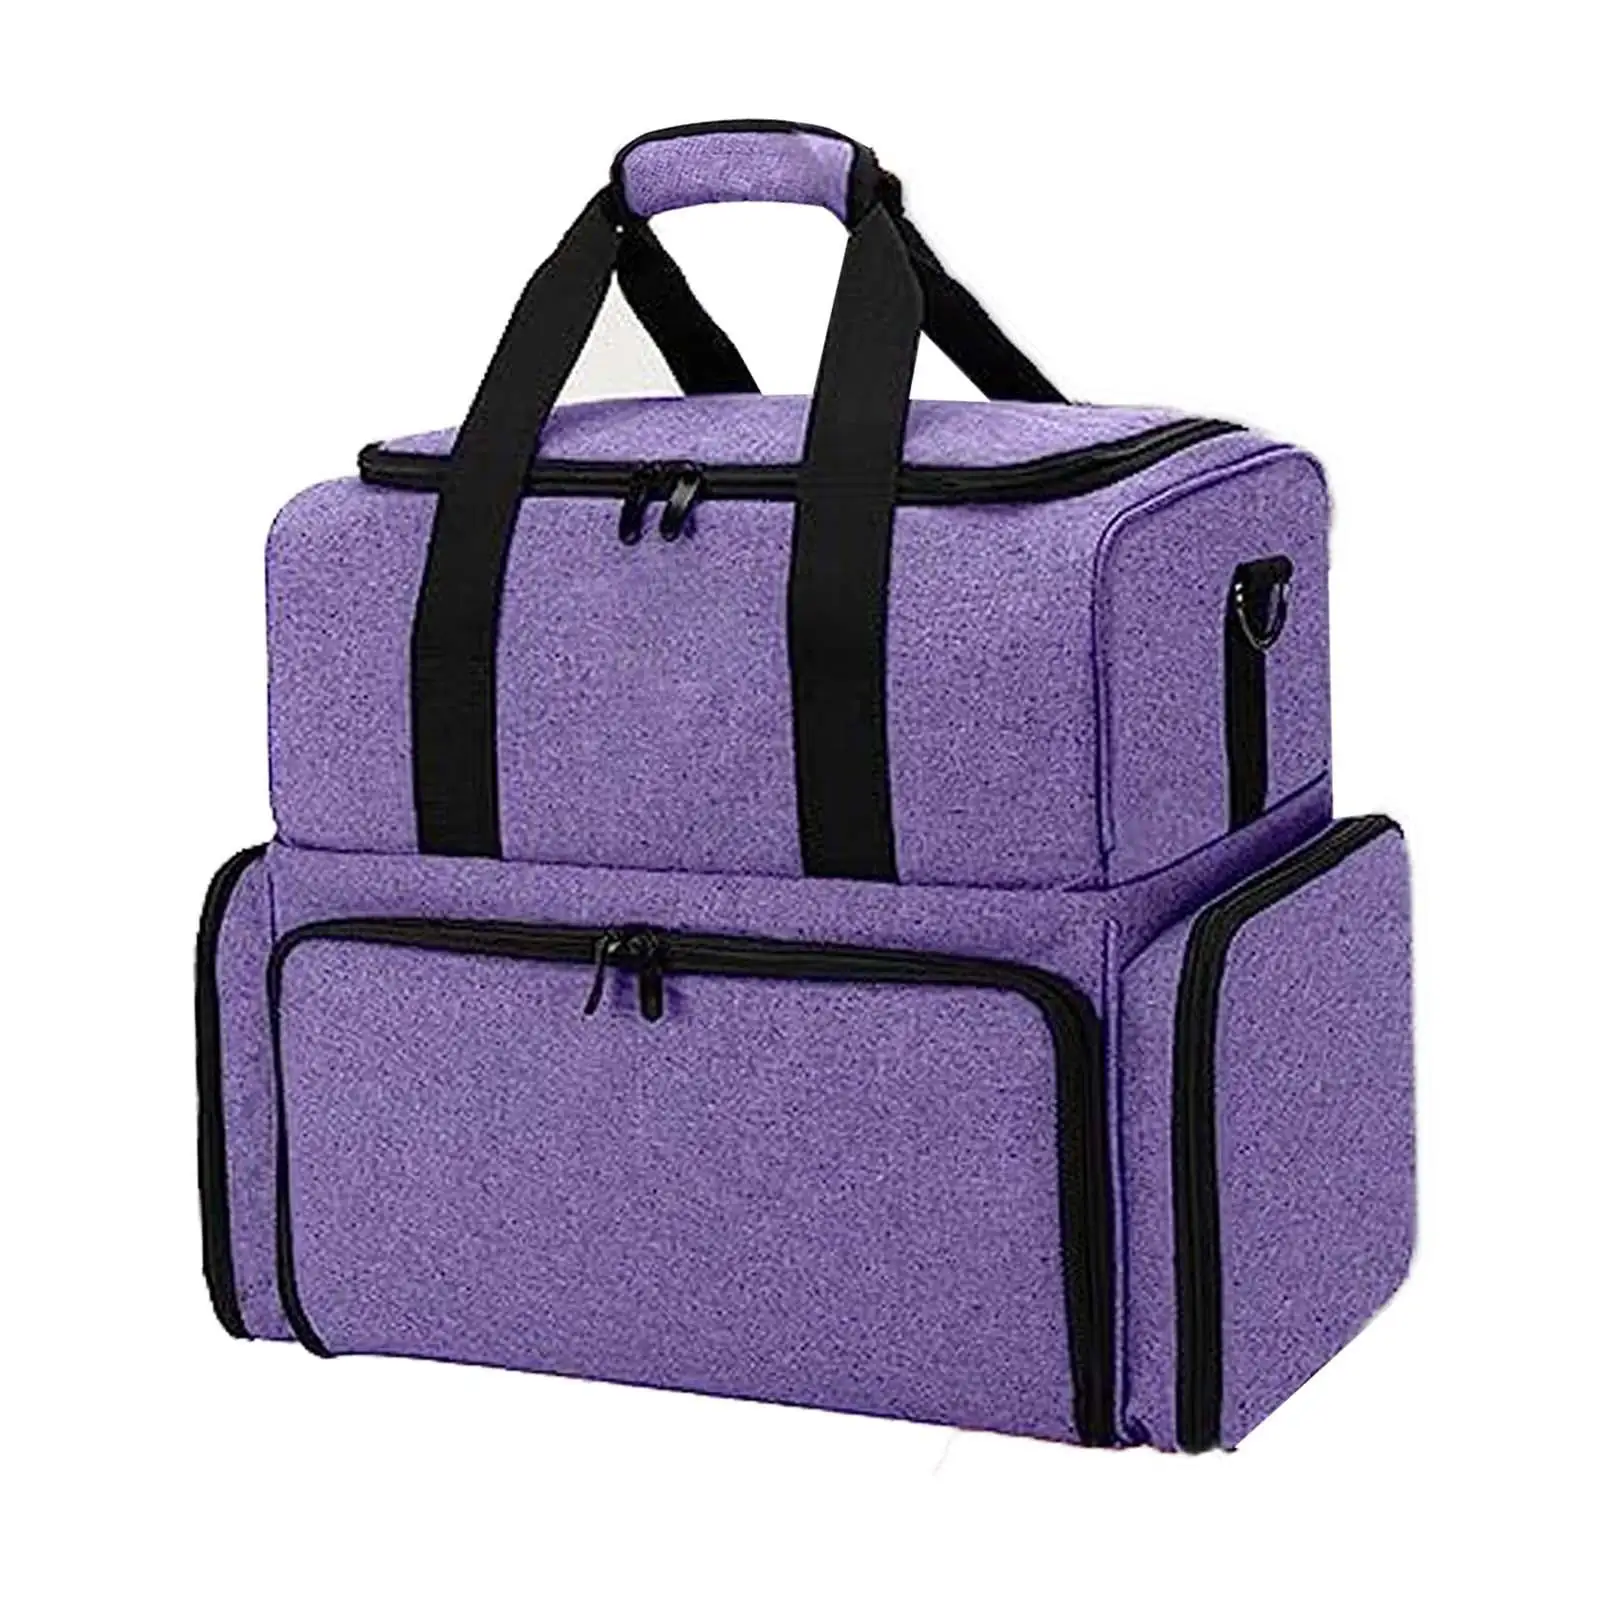 Nail Polish Storage Bag Nail Polish Case Handbag Carrying Case Toiletry Case